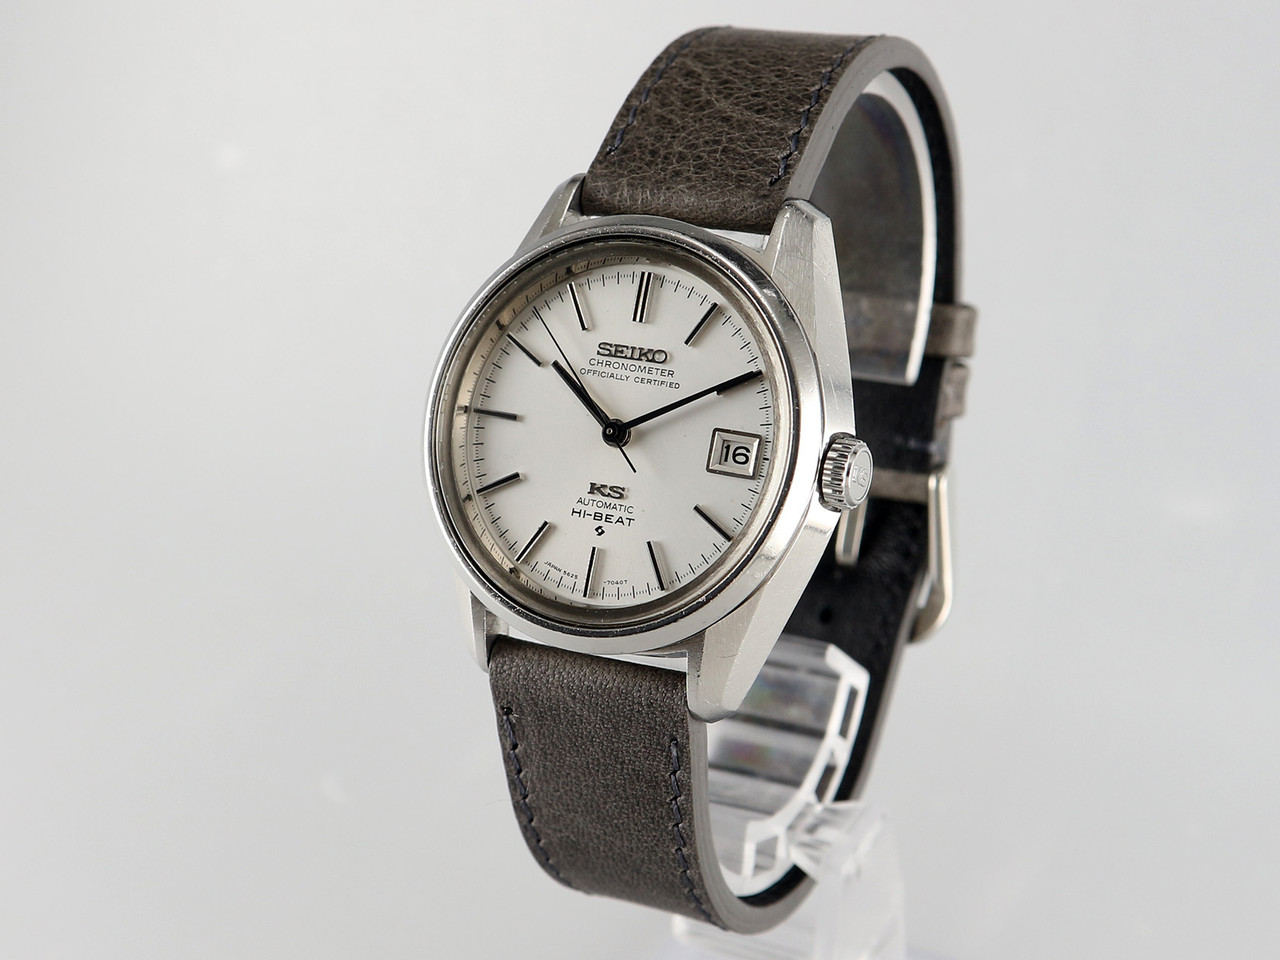 Seiko King Seiko Chronometer 56KS VWS-2023 - Vintage Watch Services